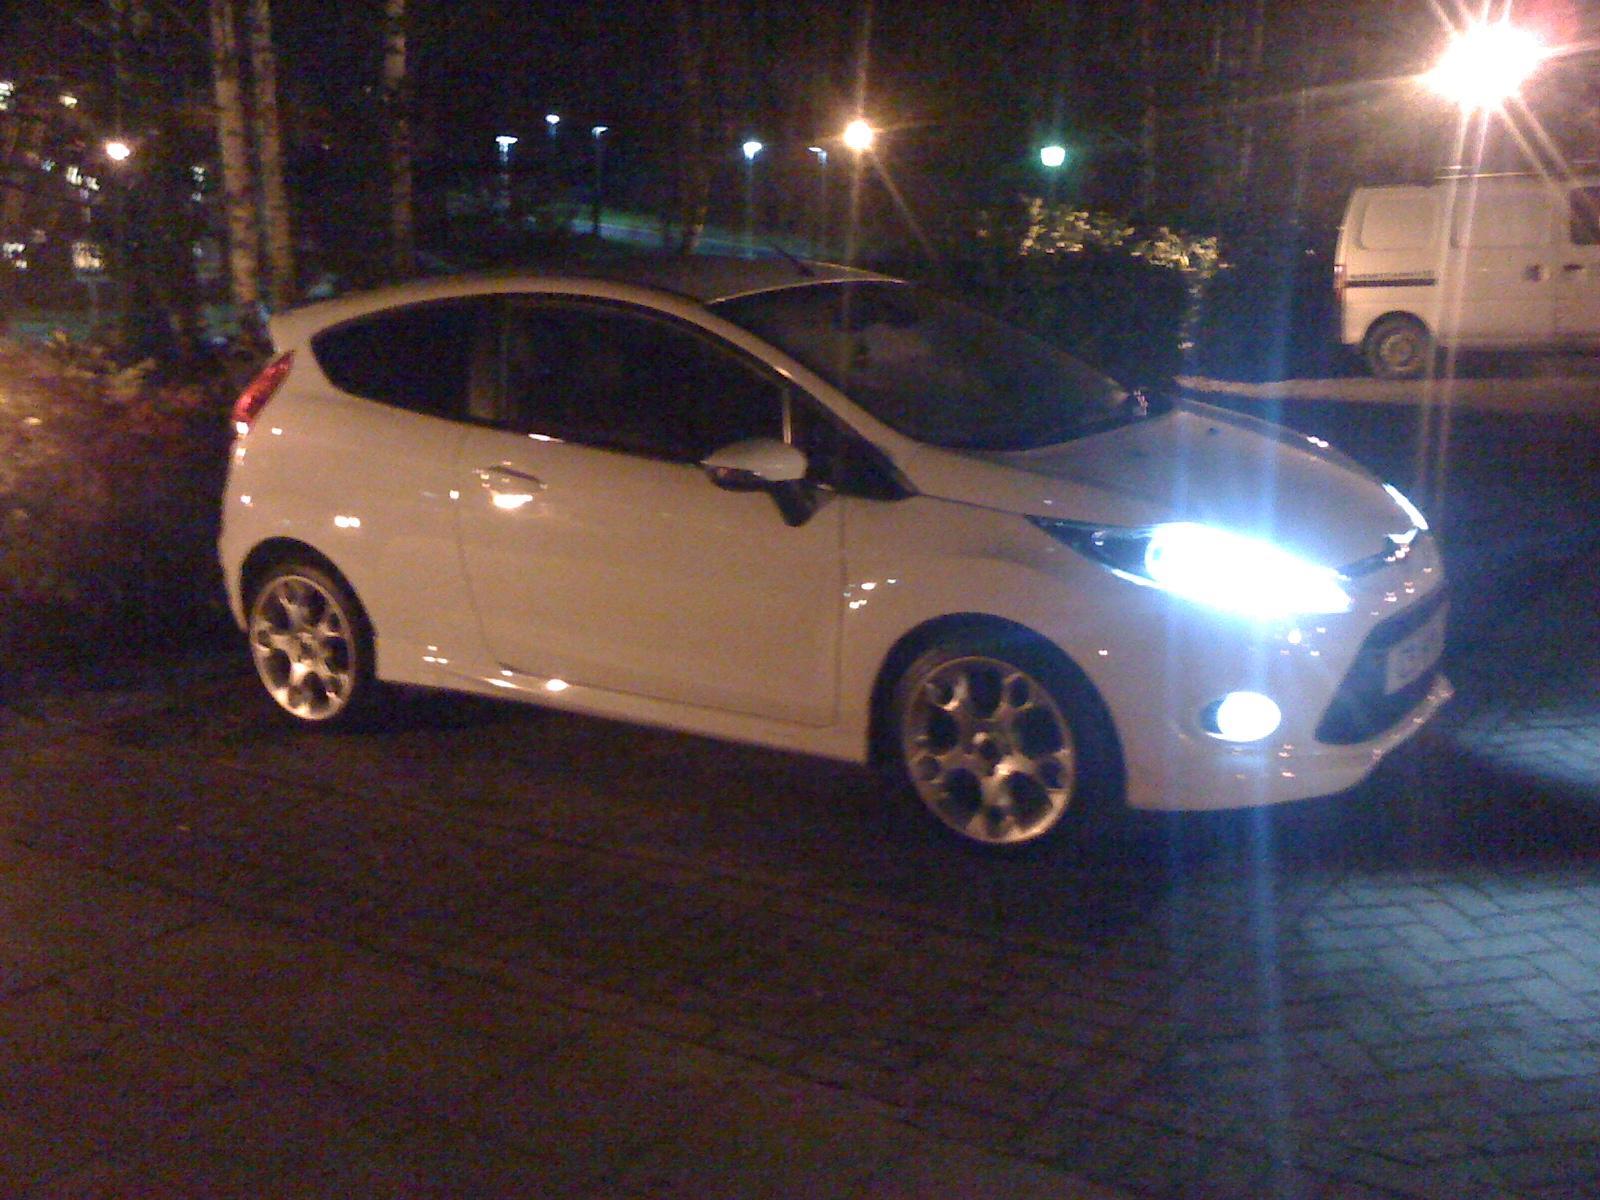  2010 Fiesta 1.6 TDCI TITANIUM-S